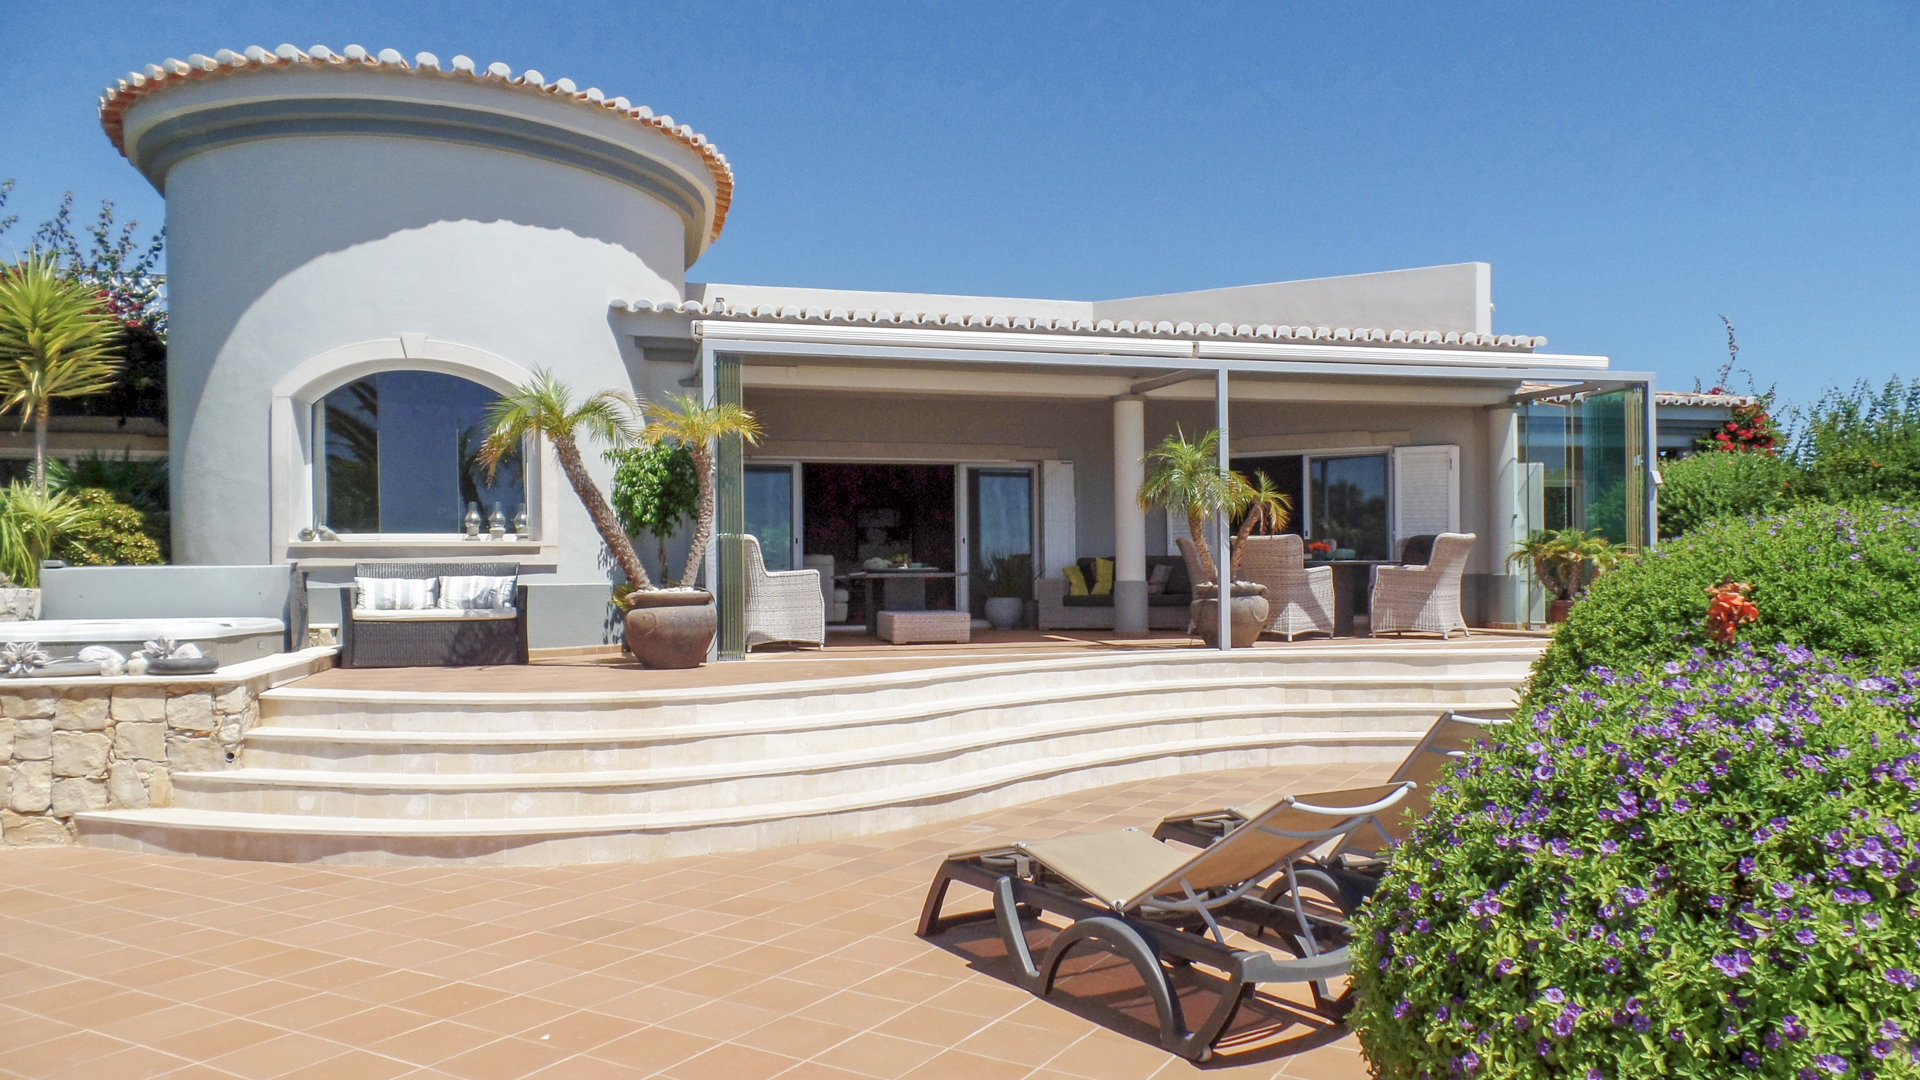 Villa de luxe de 4 chambres avec vue imprenable sur la mer à Boa Nova, prés de Carvoeiro | S2494 Villa de 4 chambres avec piscine et jacuzzi entre Ferragudo et Carvoeiro. La villa bénéficie d'un emplacement magnifique, d'un grand espace de vie, d'une vue fantastique sur la mer et se trouve à proximité de la plage, des commodités et du golf.